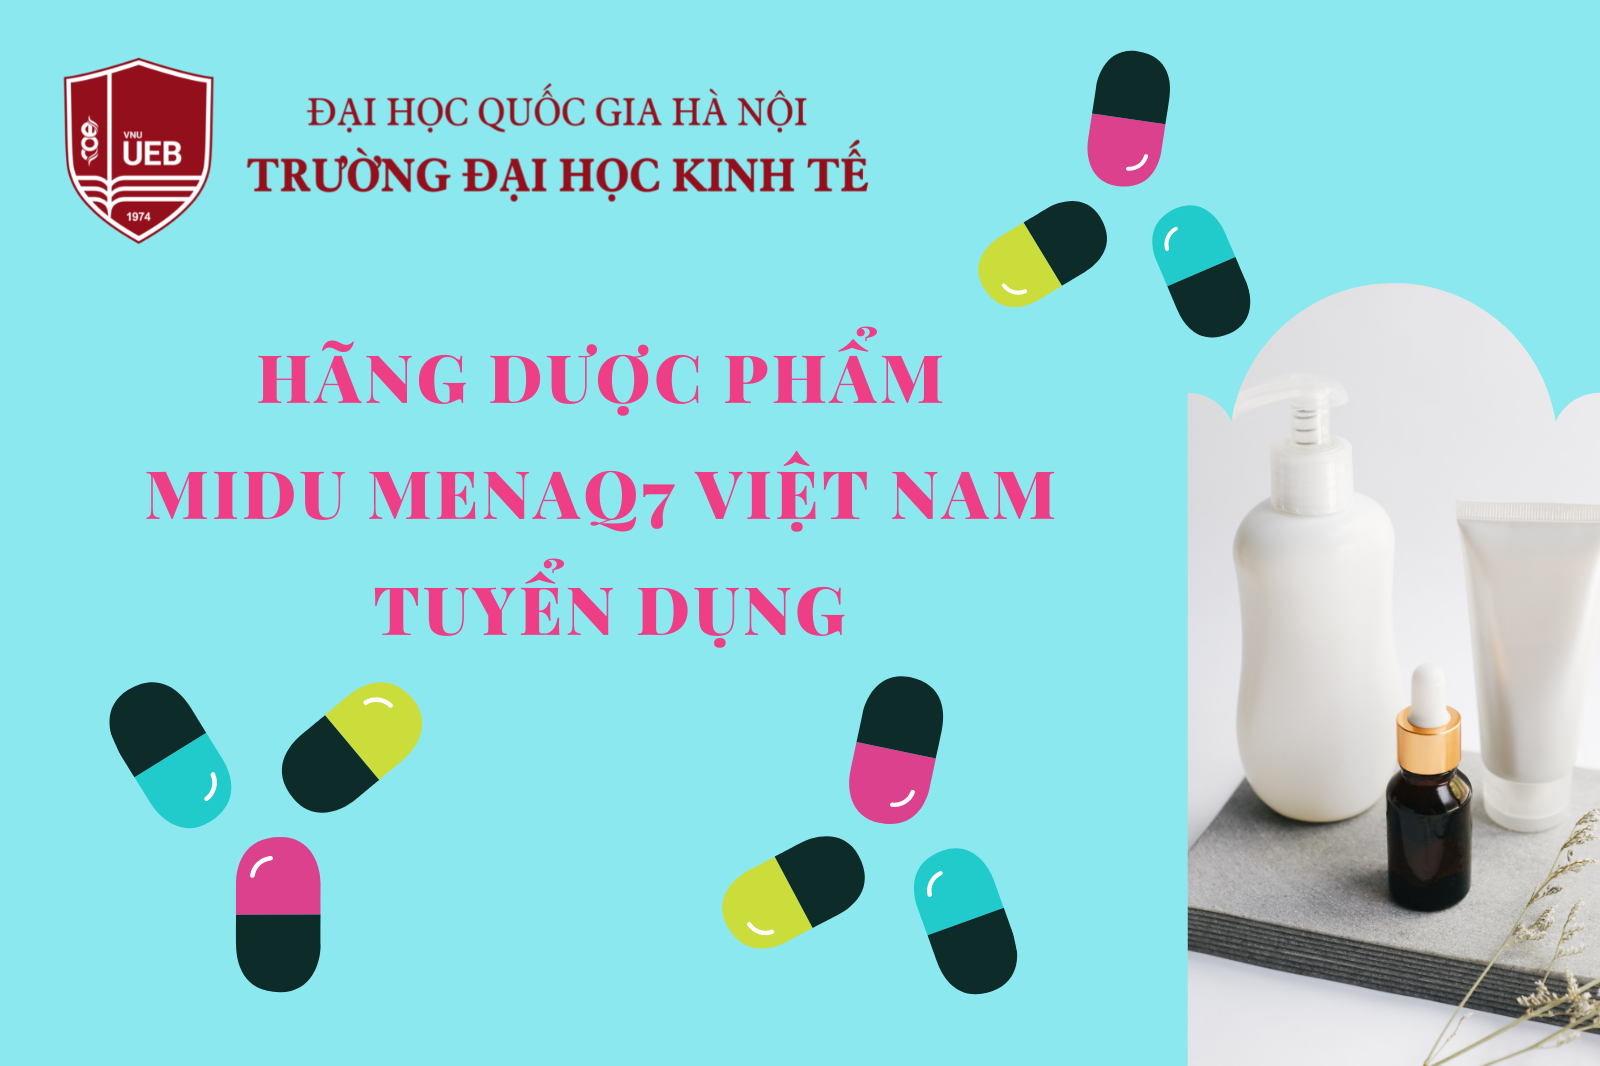 Hãng Dược phẩm Midu MenaQ7 Việt Nam tuyển dụng